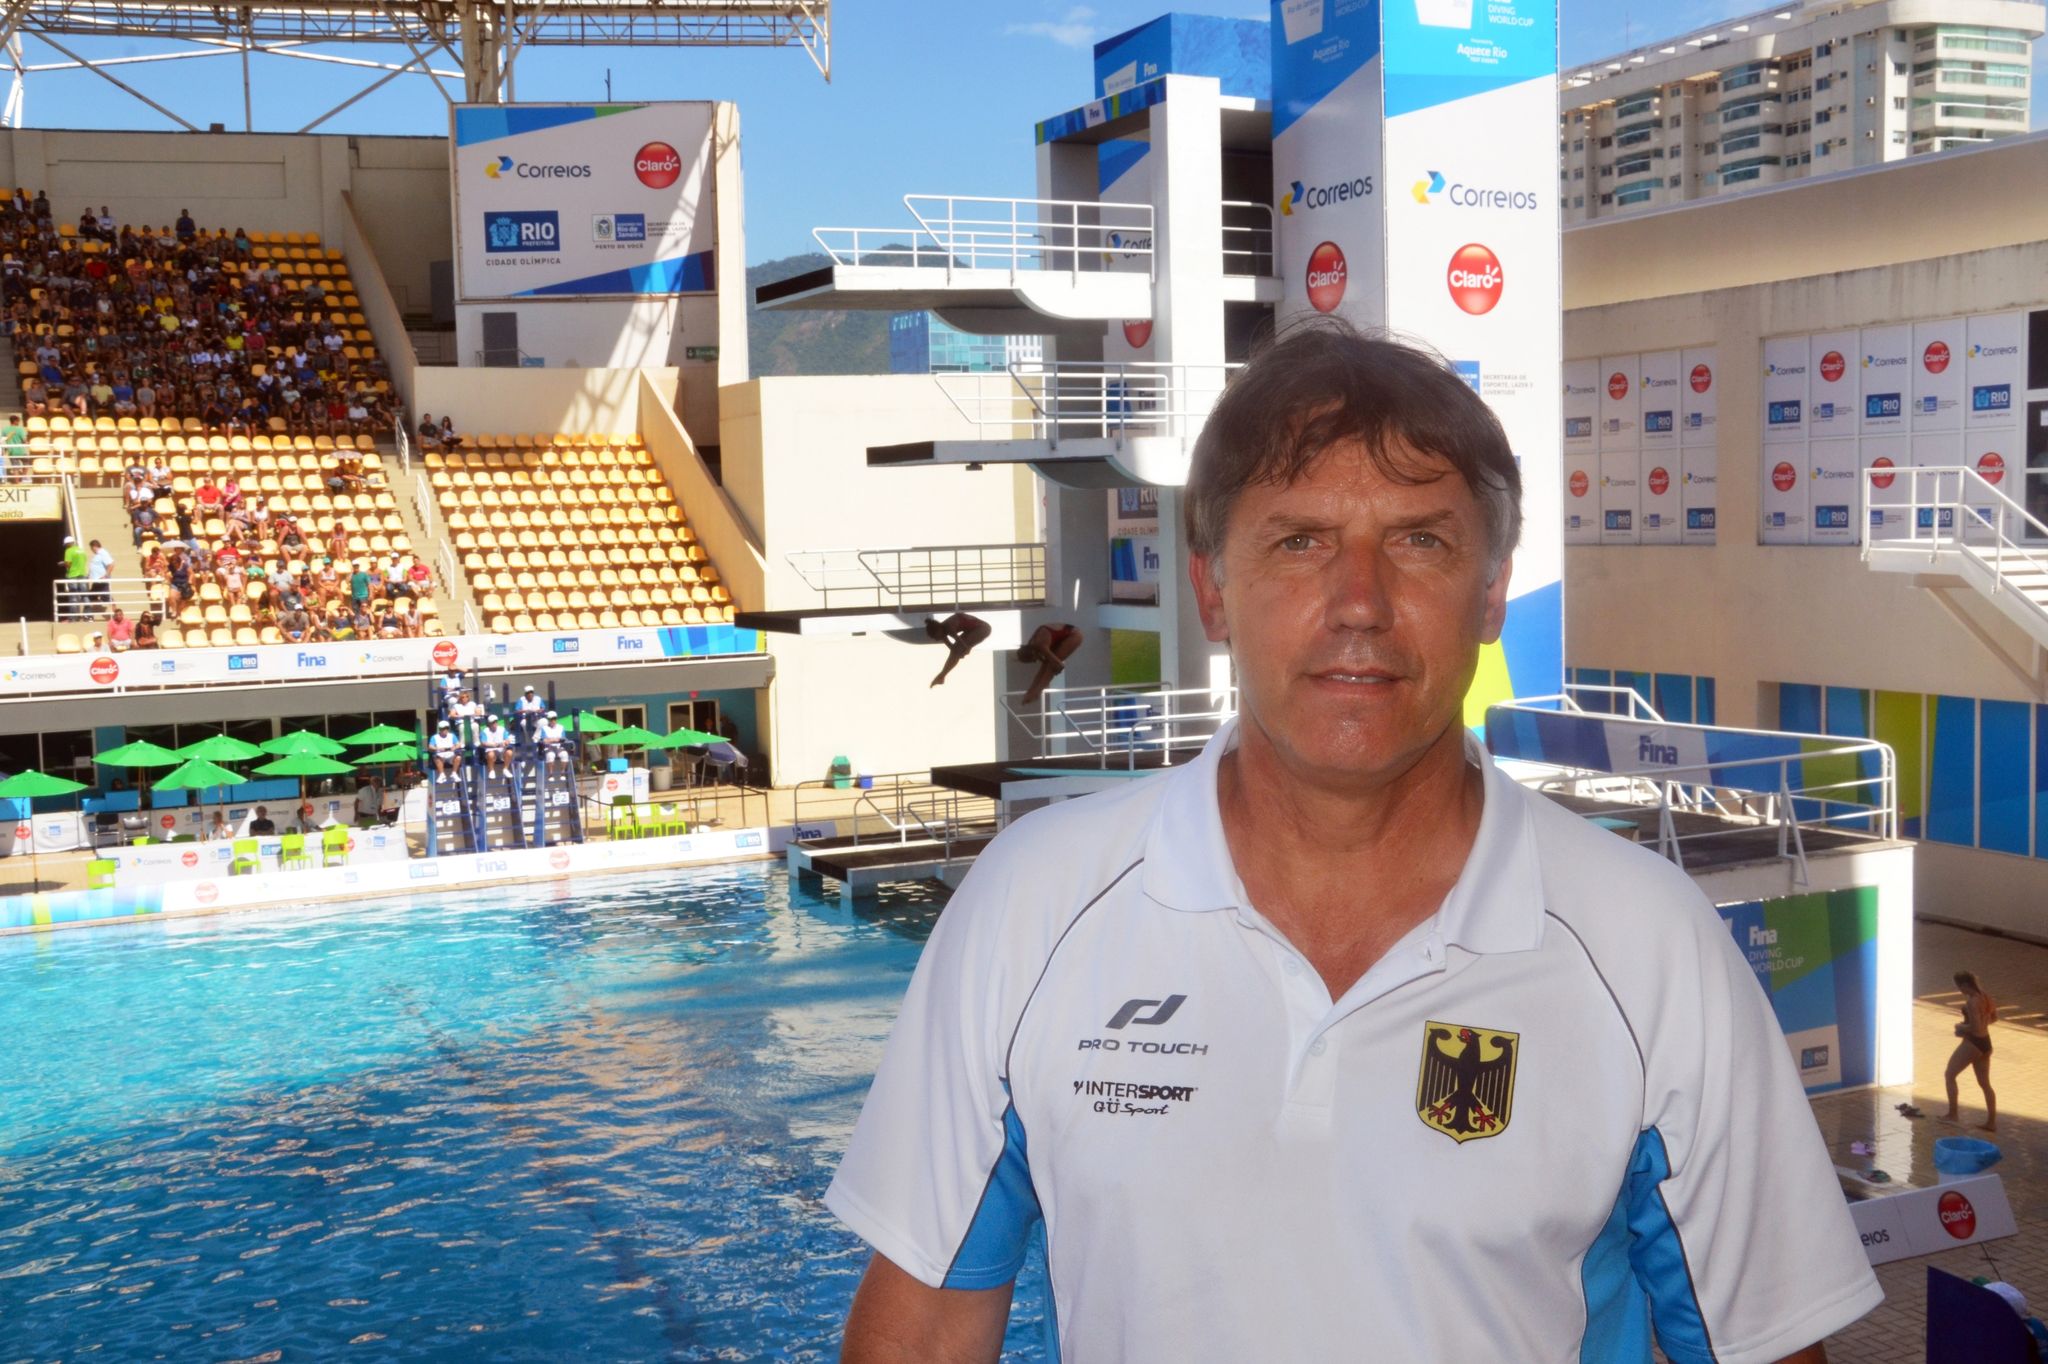 Der Wassersprung-Bundestrainer Lutz Buschkow wurde entlassen. Grund dafür sind Vorwürfe vom Missbrauch Jan Hempels gewusst, aber nichts unternommen zu haben.